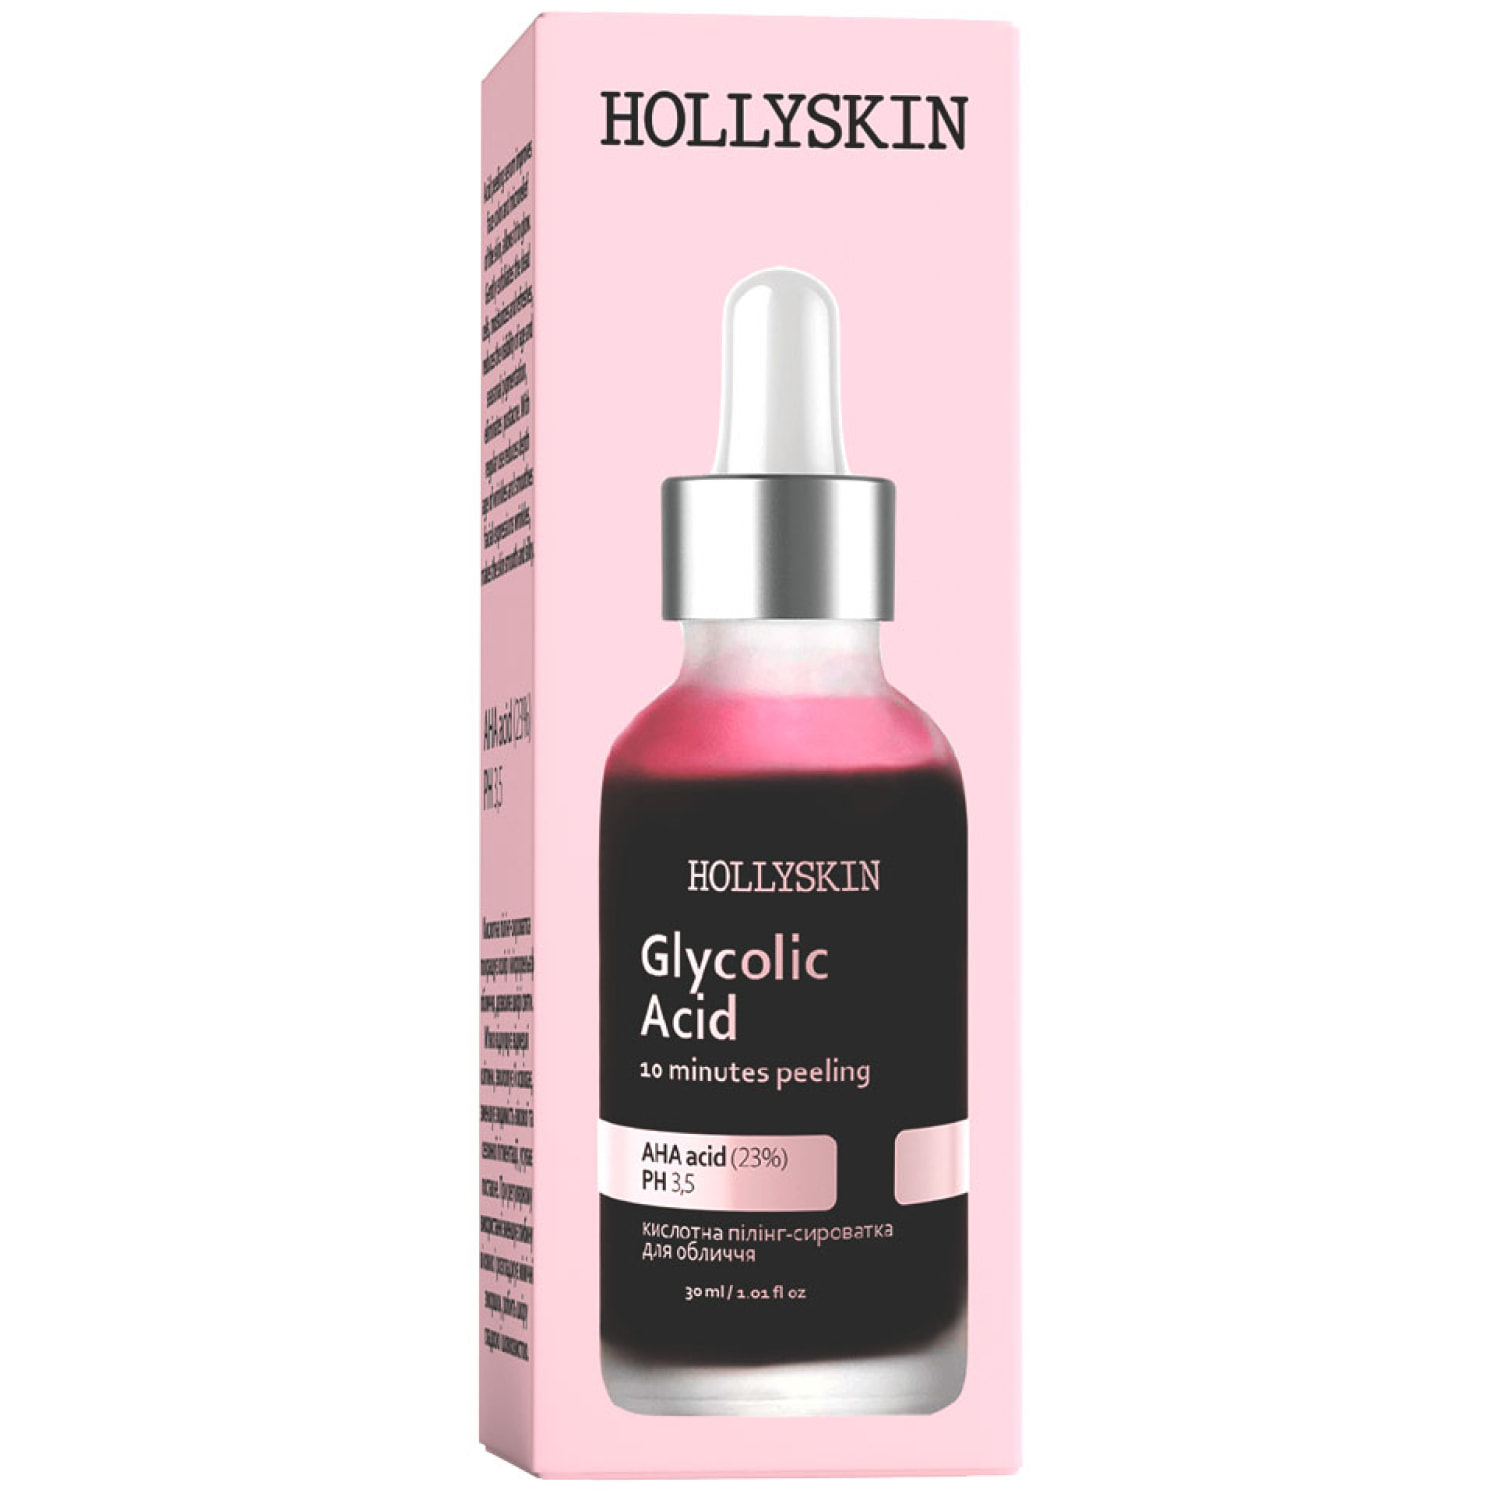 Кислотна пілінг-сироватка для обличчя Hollyskin Glycolic Acid, 30 мл - фото 1